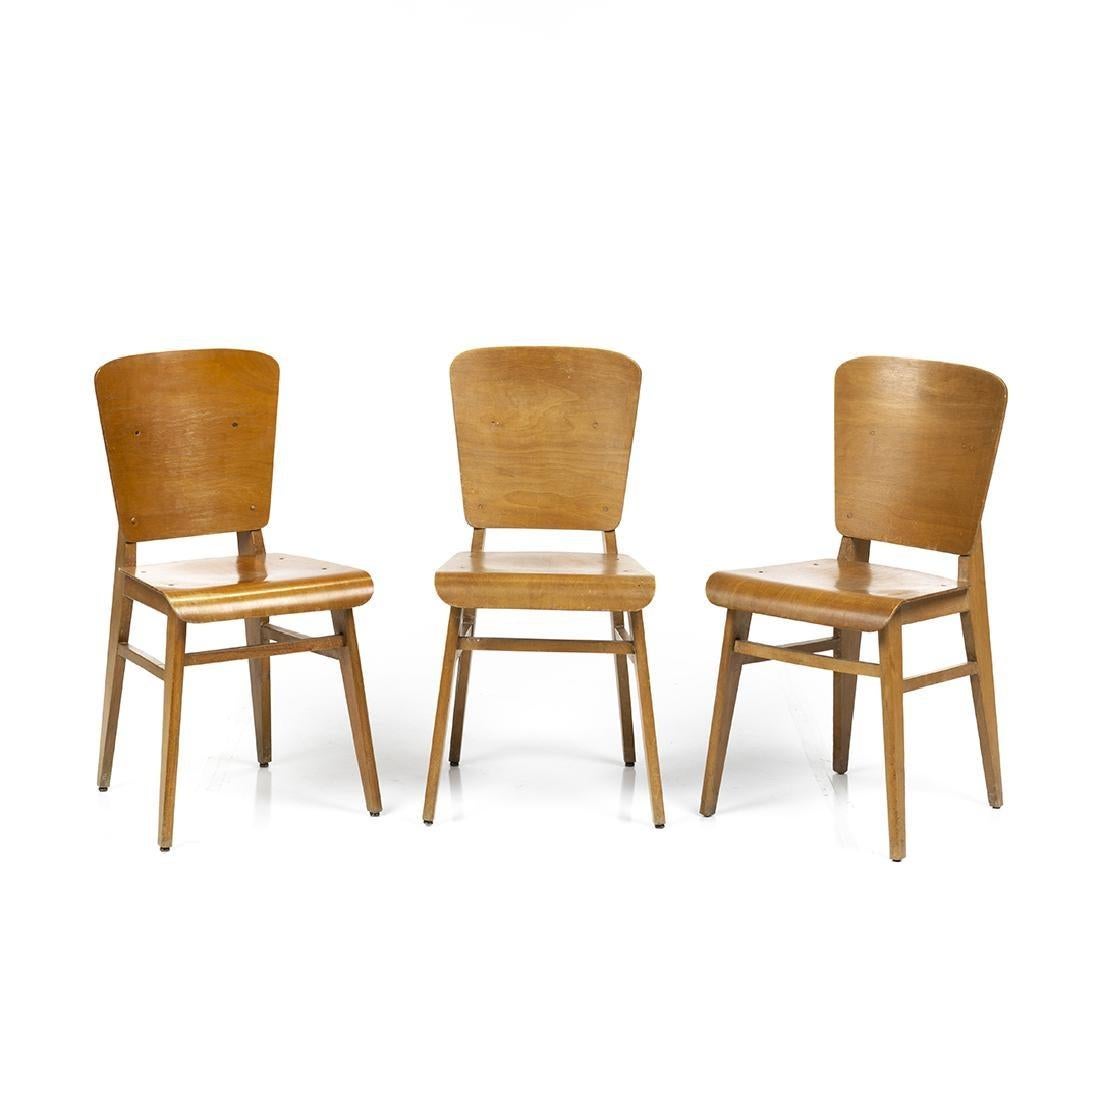 Ensemble de six chaises de salle à manger en contreplaqué de bouleau moulé dans le style de Jean Prouvé, France, vers les années 1950.